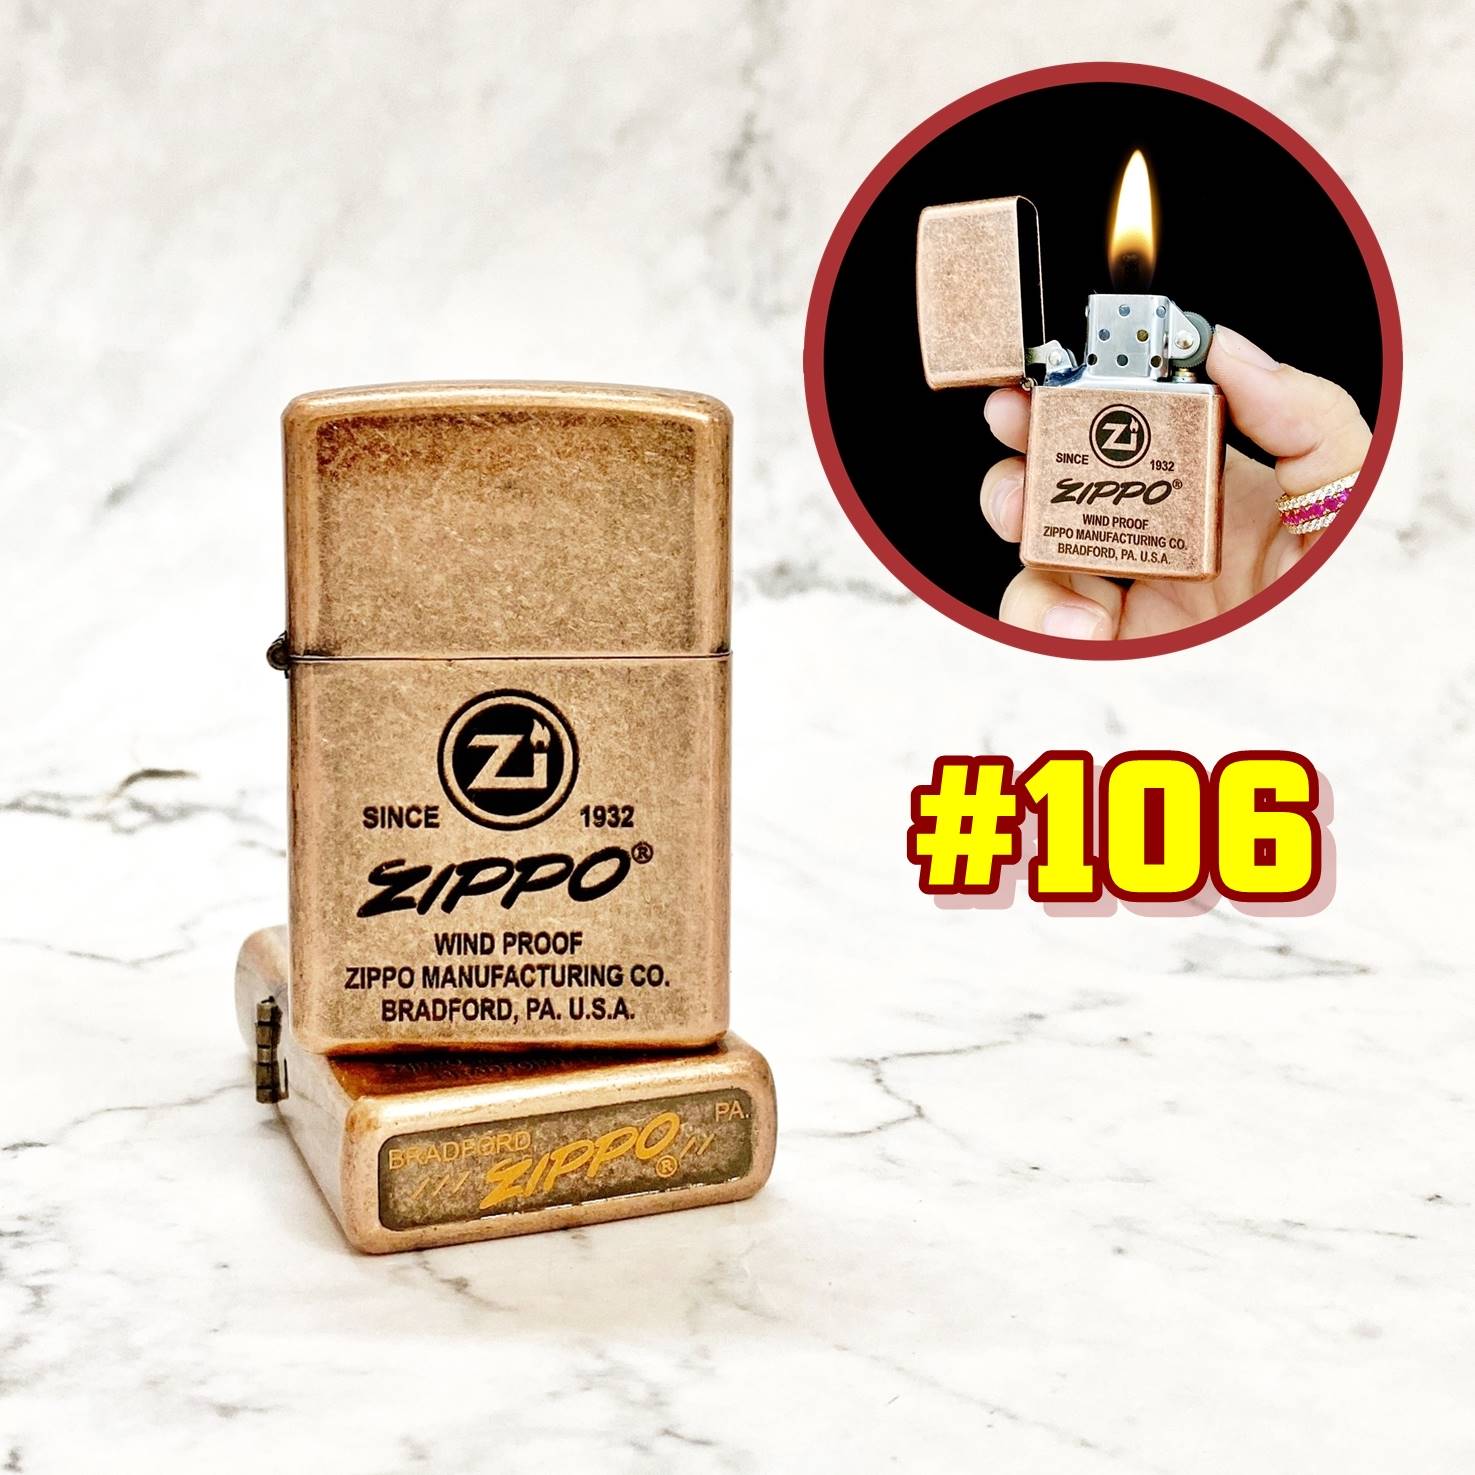 Hộp quẹt bật lửa Zipo đồng cổ logo ZÍppo chữ xéo (chữ nghiêng) (có mộc đáy) - (hộp thiếc kèm xăng) H-106